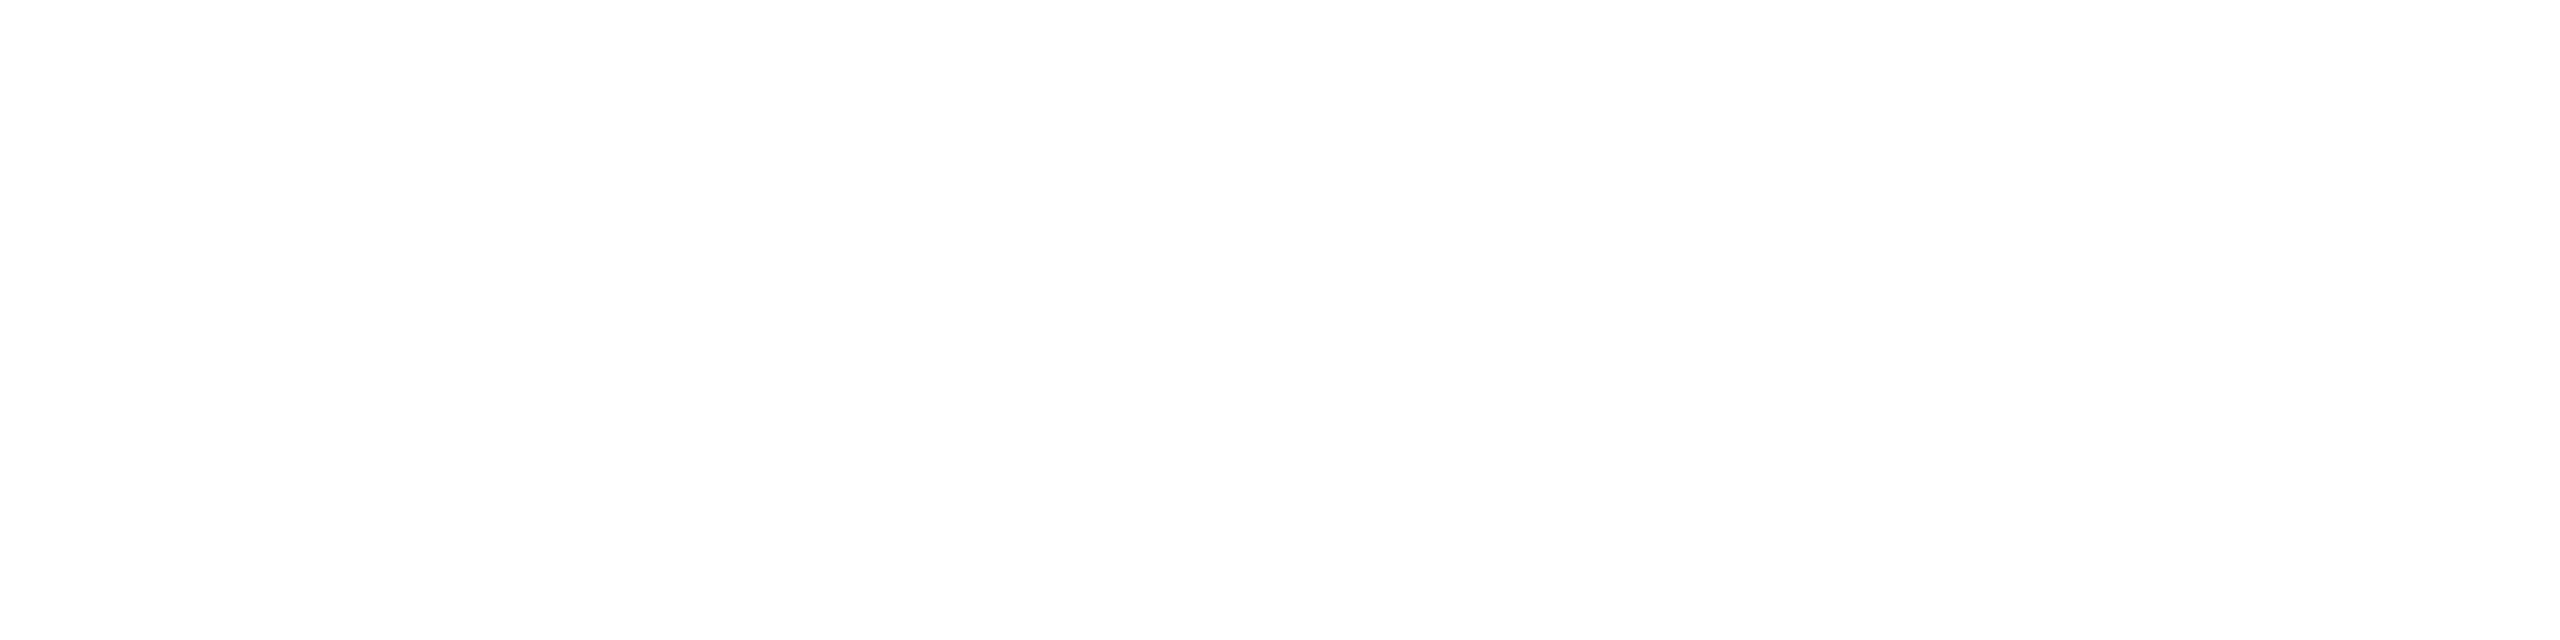 Vevo Logo